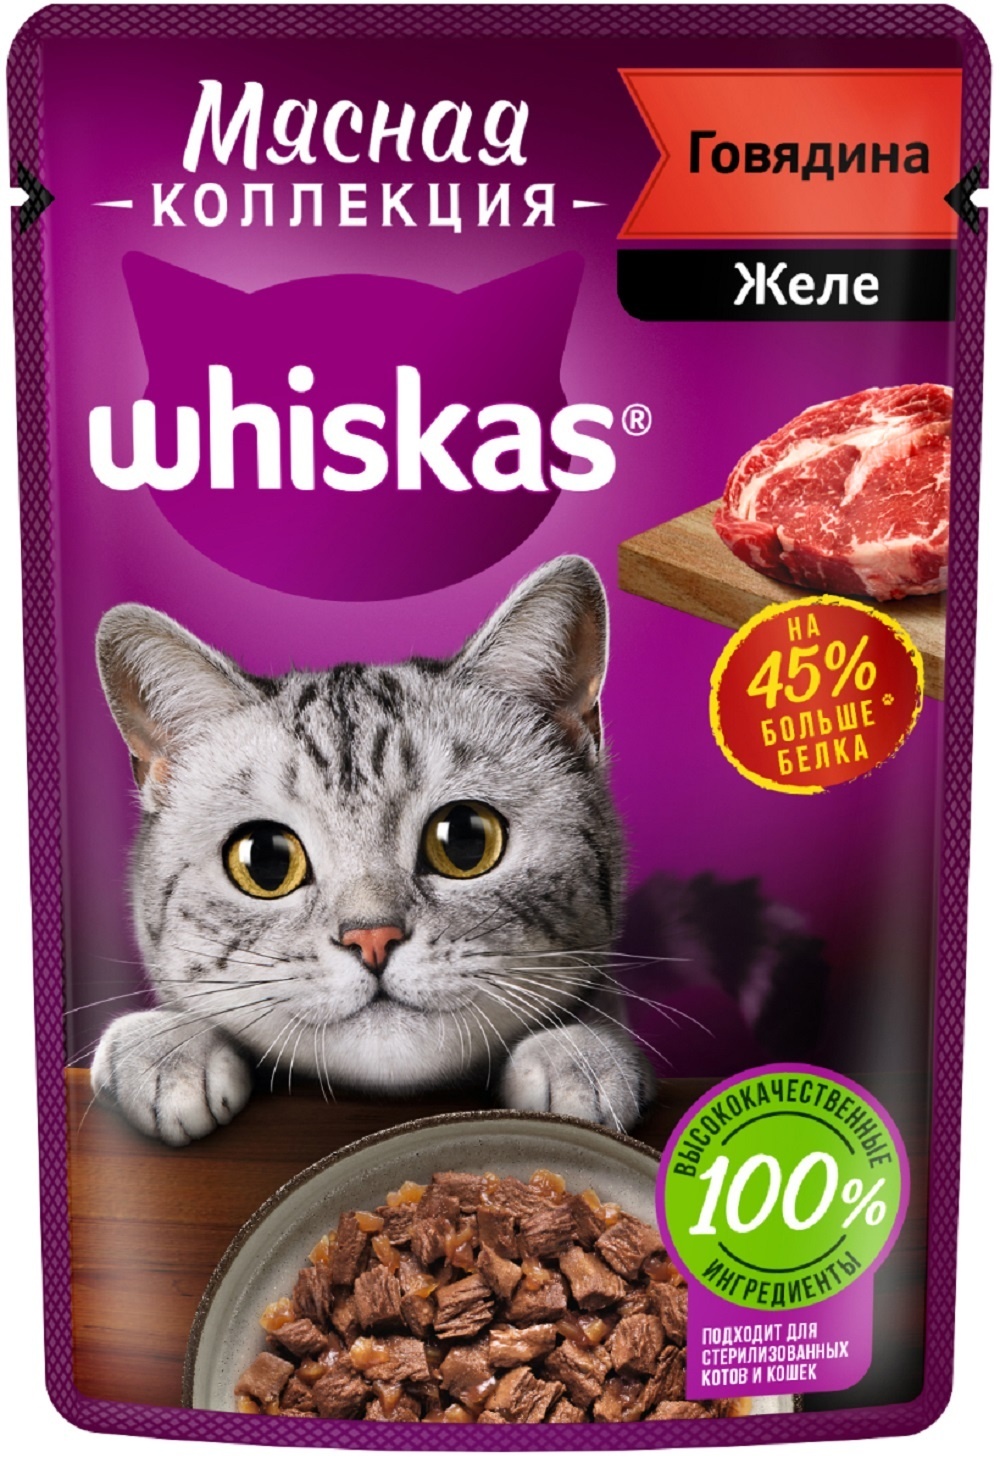 Whiskas Whiskas влажный корм «Мясная коллекция» для кошек, с говядиной (75 г)